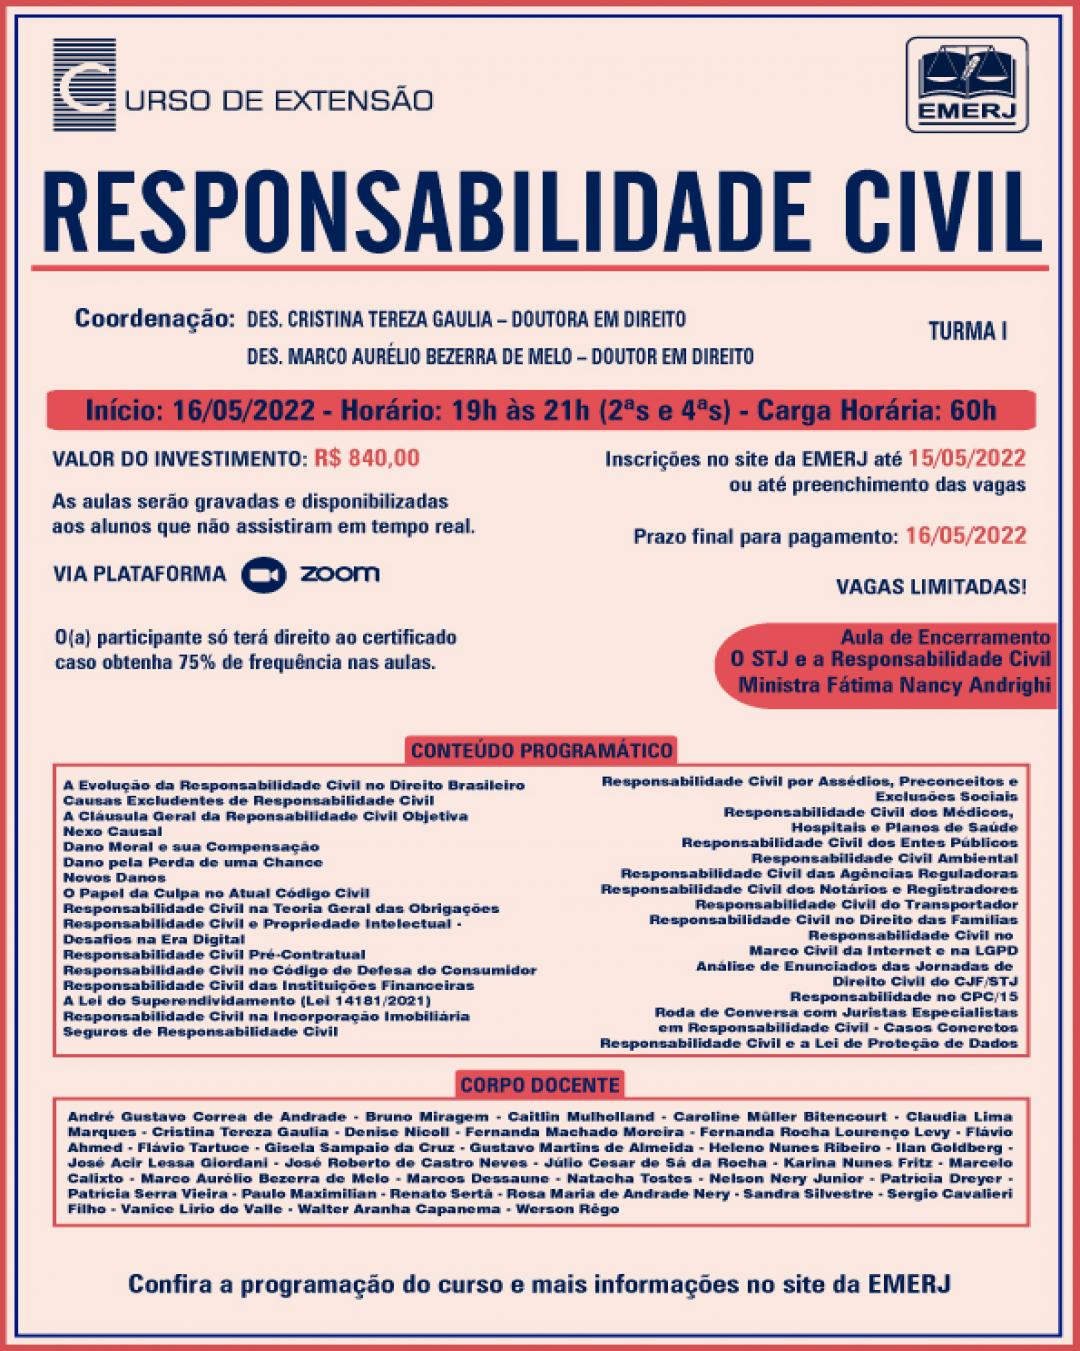 Imagem do banner principal do curso - RESPONSABILIDADE CIVIL